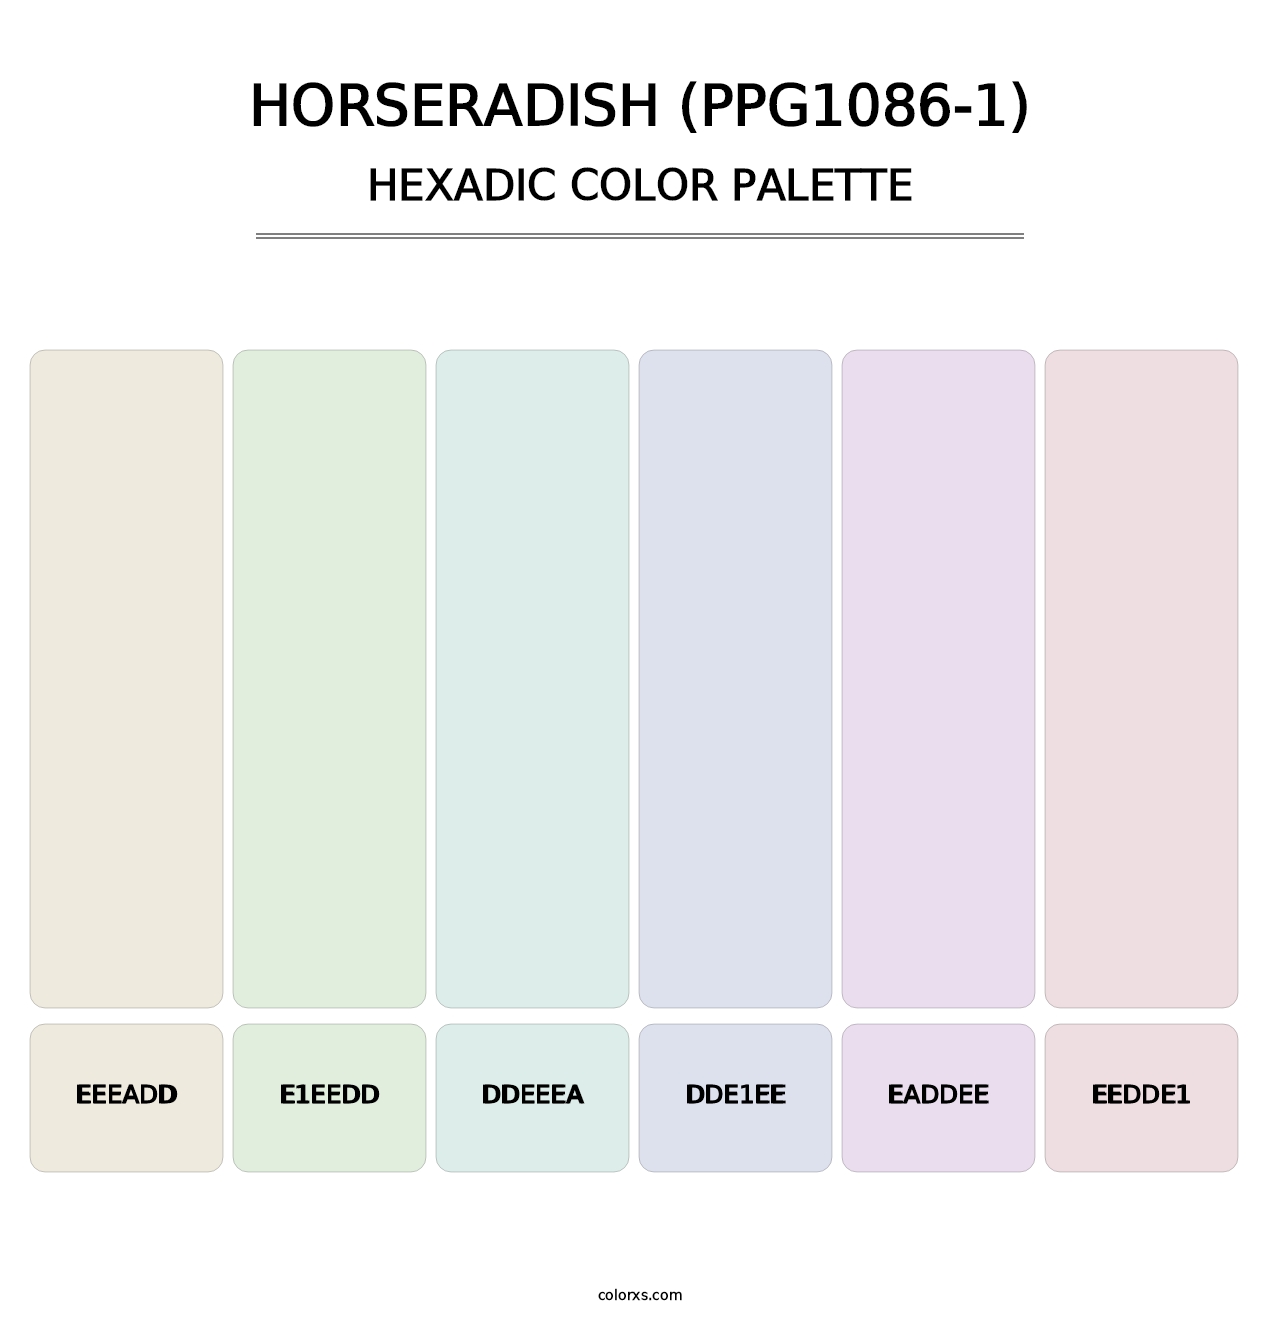 Horseradish (PPG1086-1) - Hexadic Color Palette